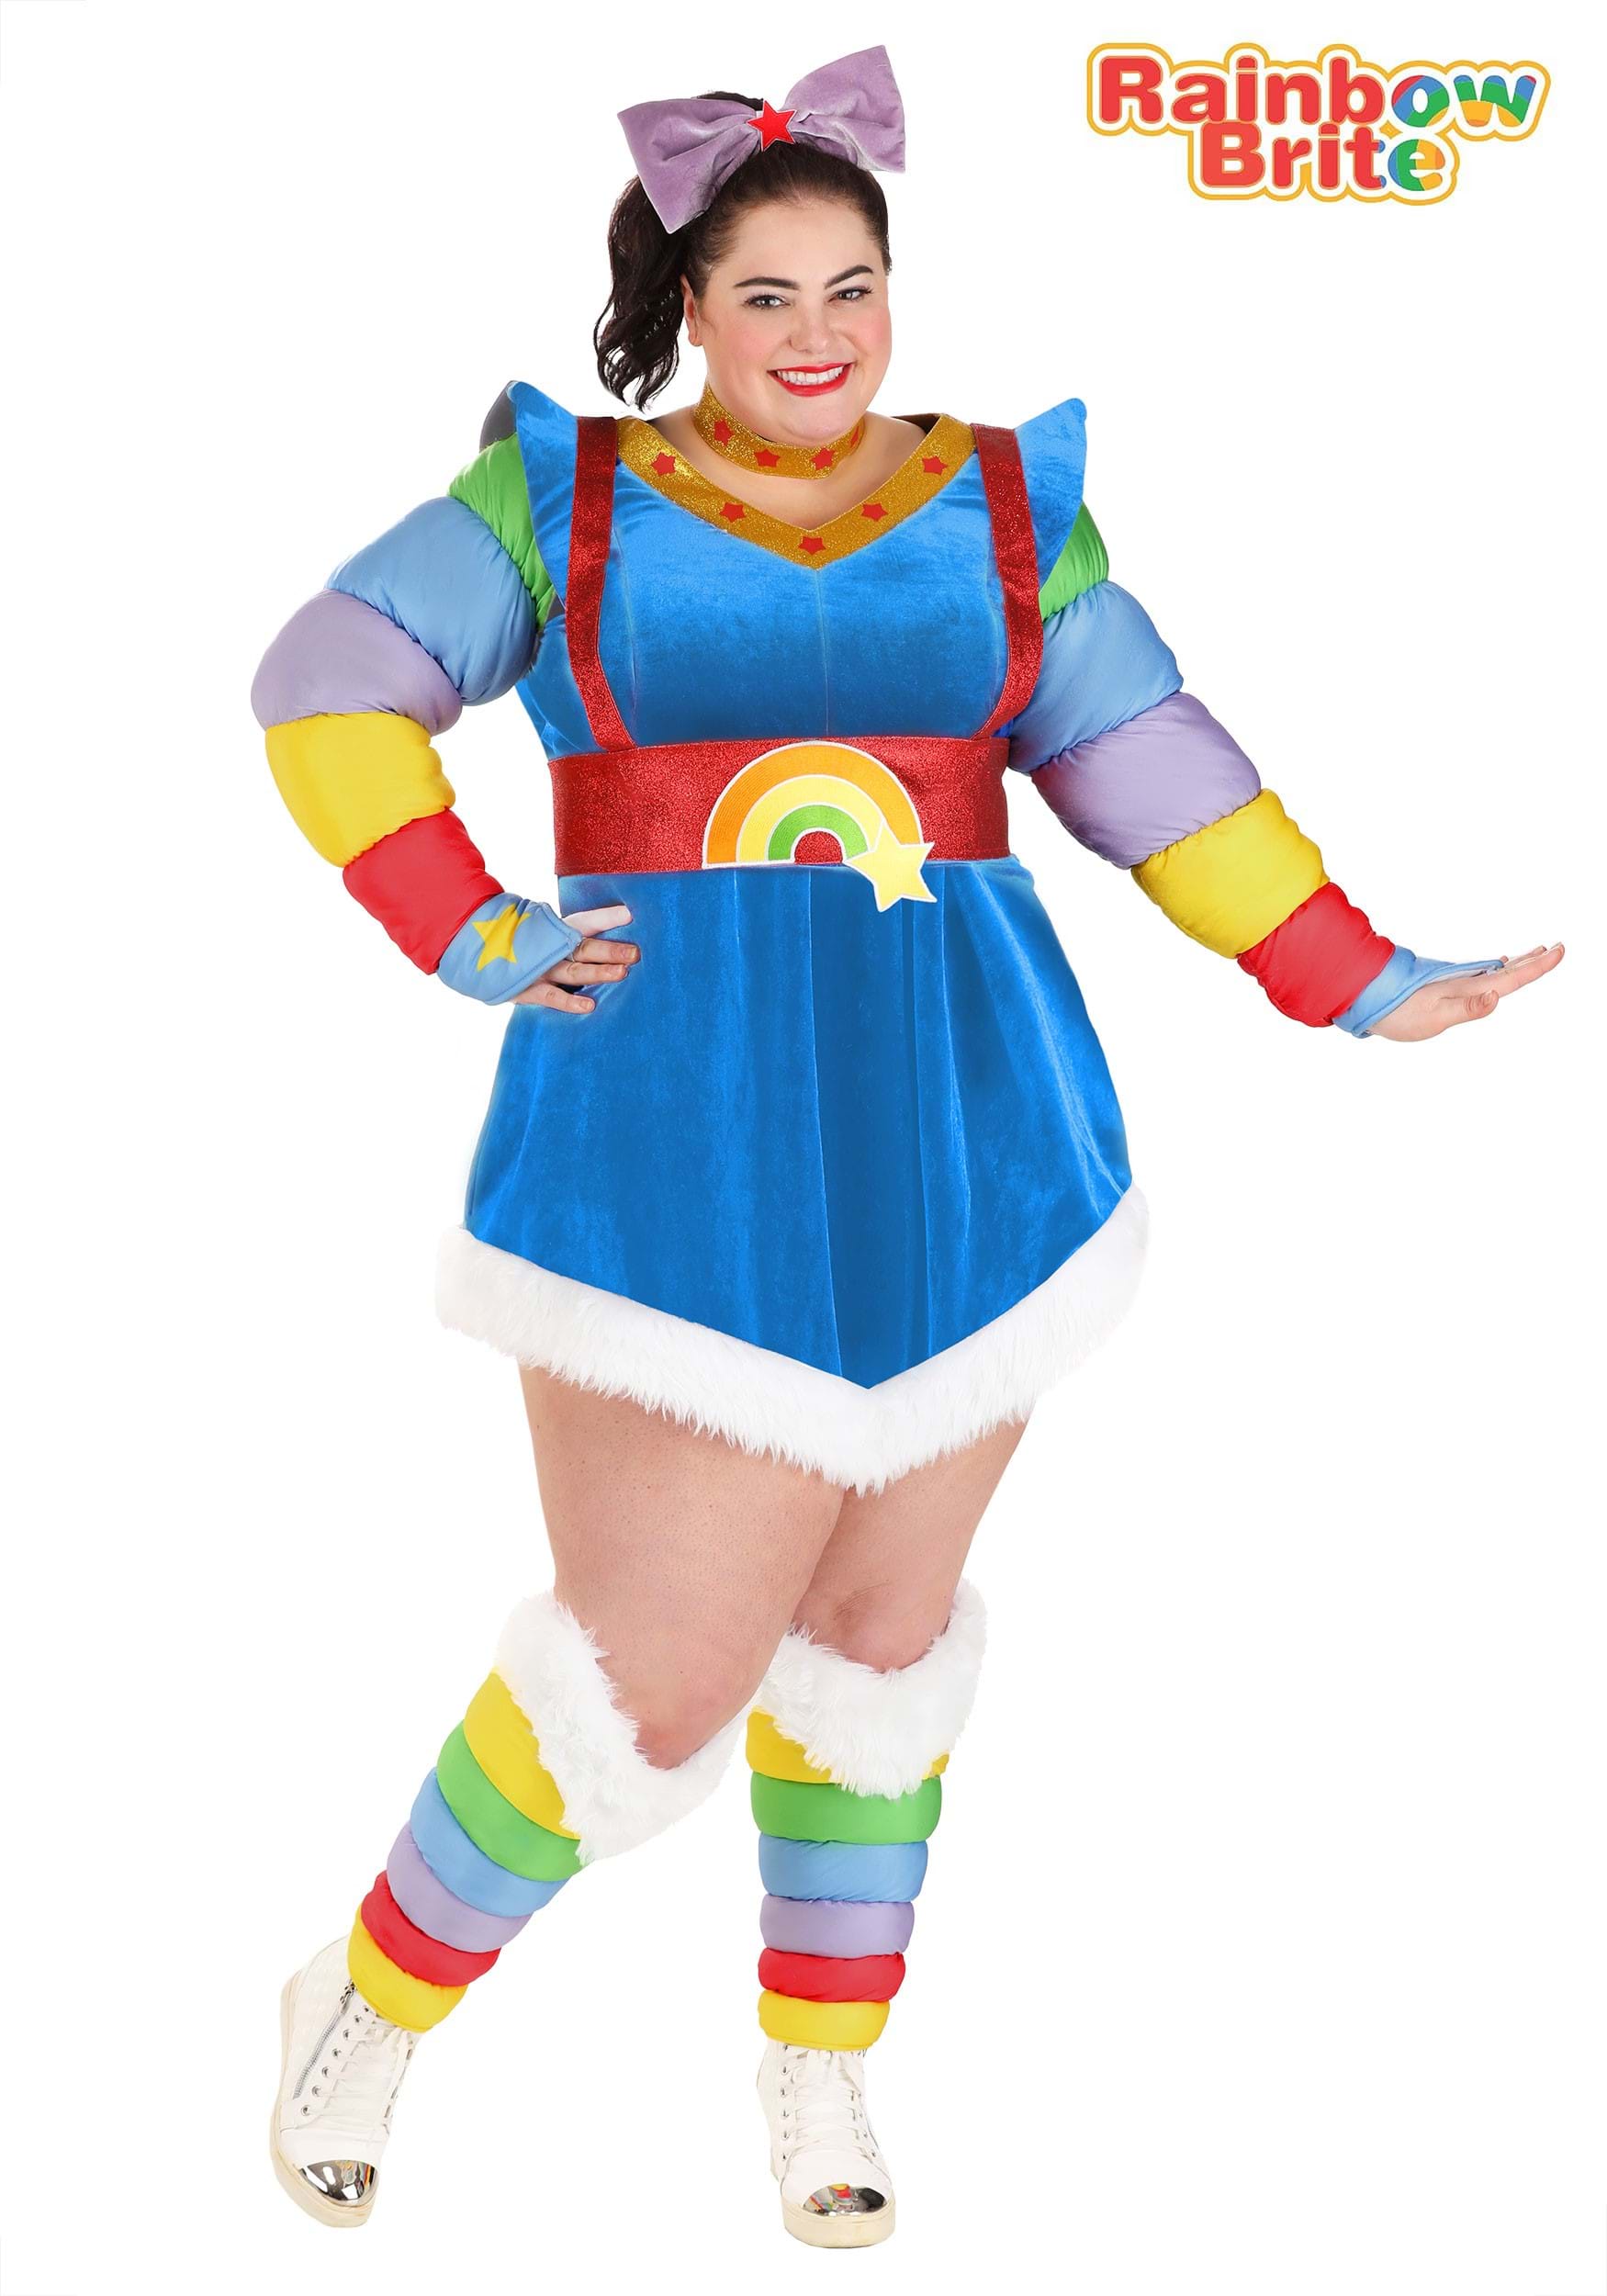 Plus Size Authentic Rainbow Brite Women's Costume | Rainbow Brite Costumes